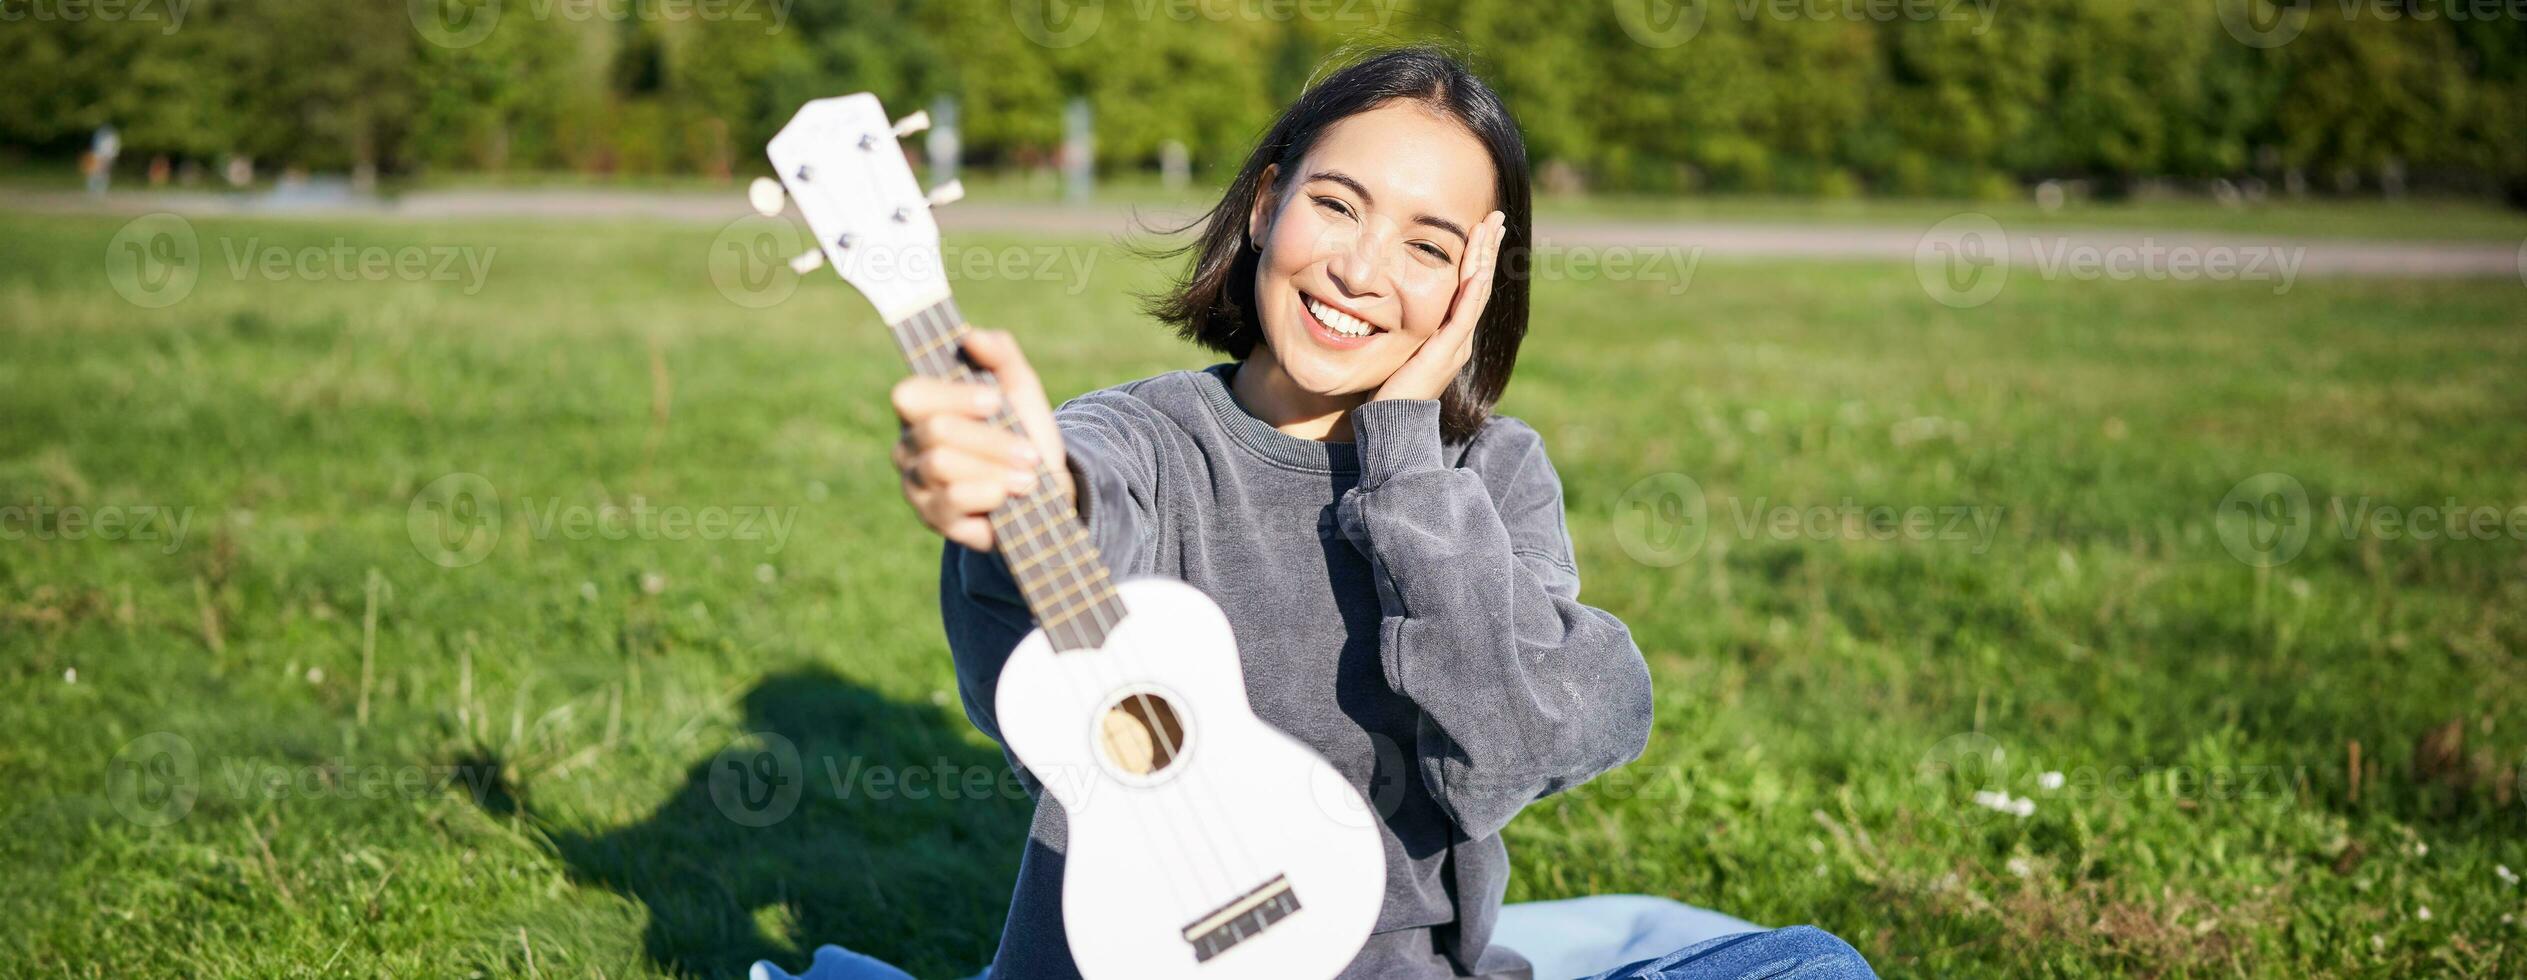 schön asiatisch Mädchen mit glücklich lächeln, zeigt an ihr Ukulele, sitzt draußen im Park auf Gras, entspannt sich mit Musik- foto